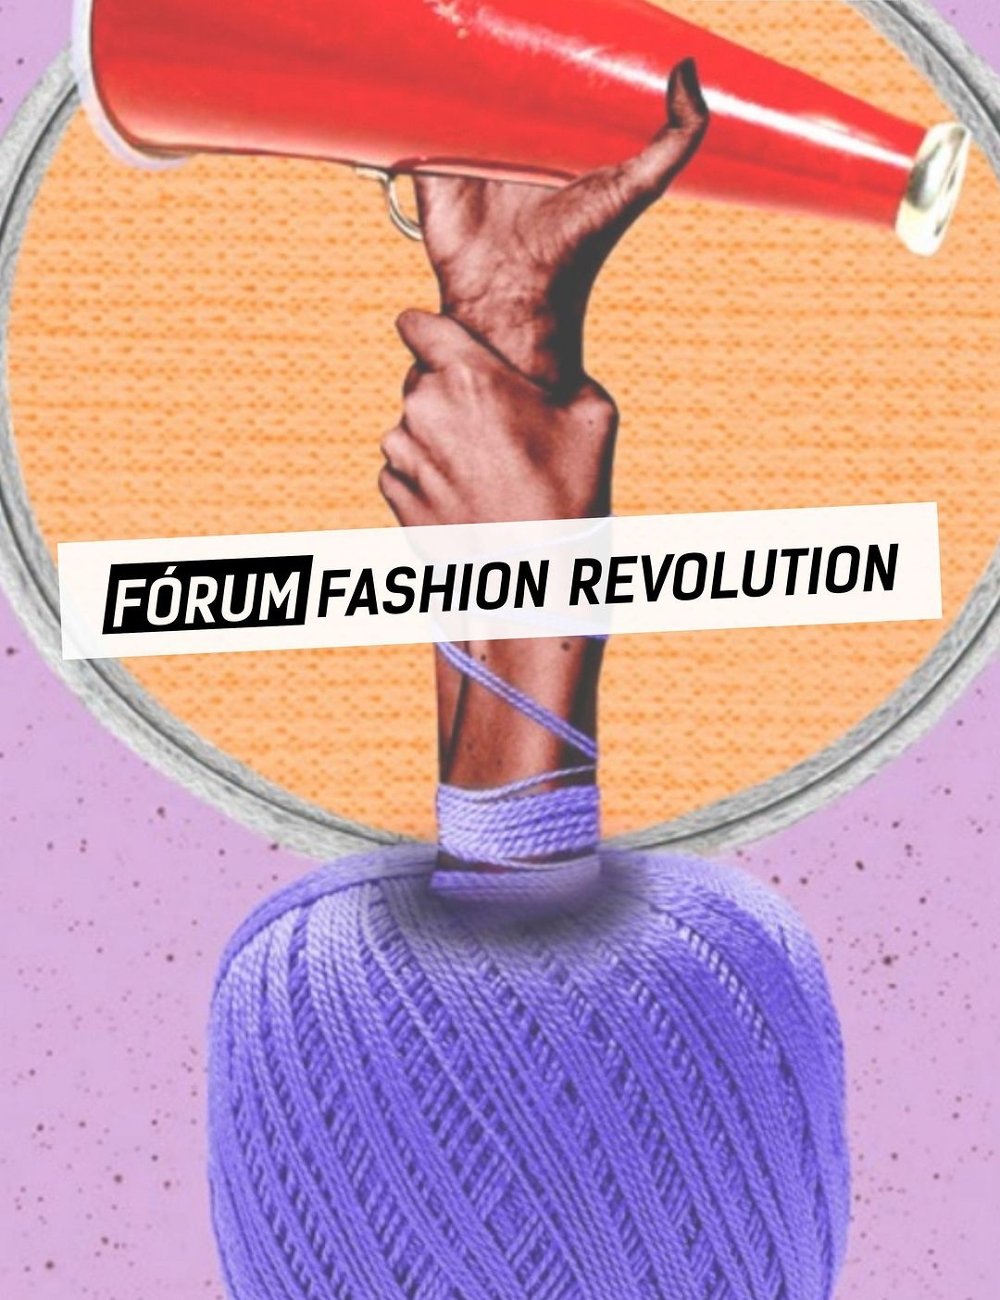 Fashion Revolution lança campanha para debate de moda consciente